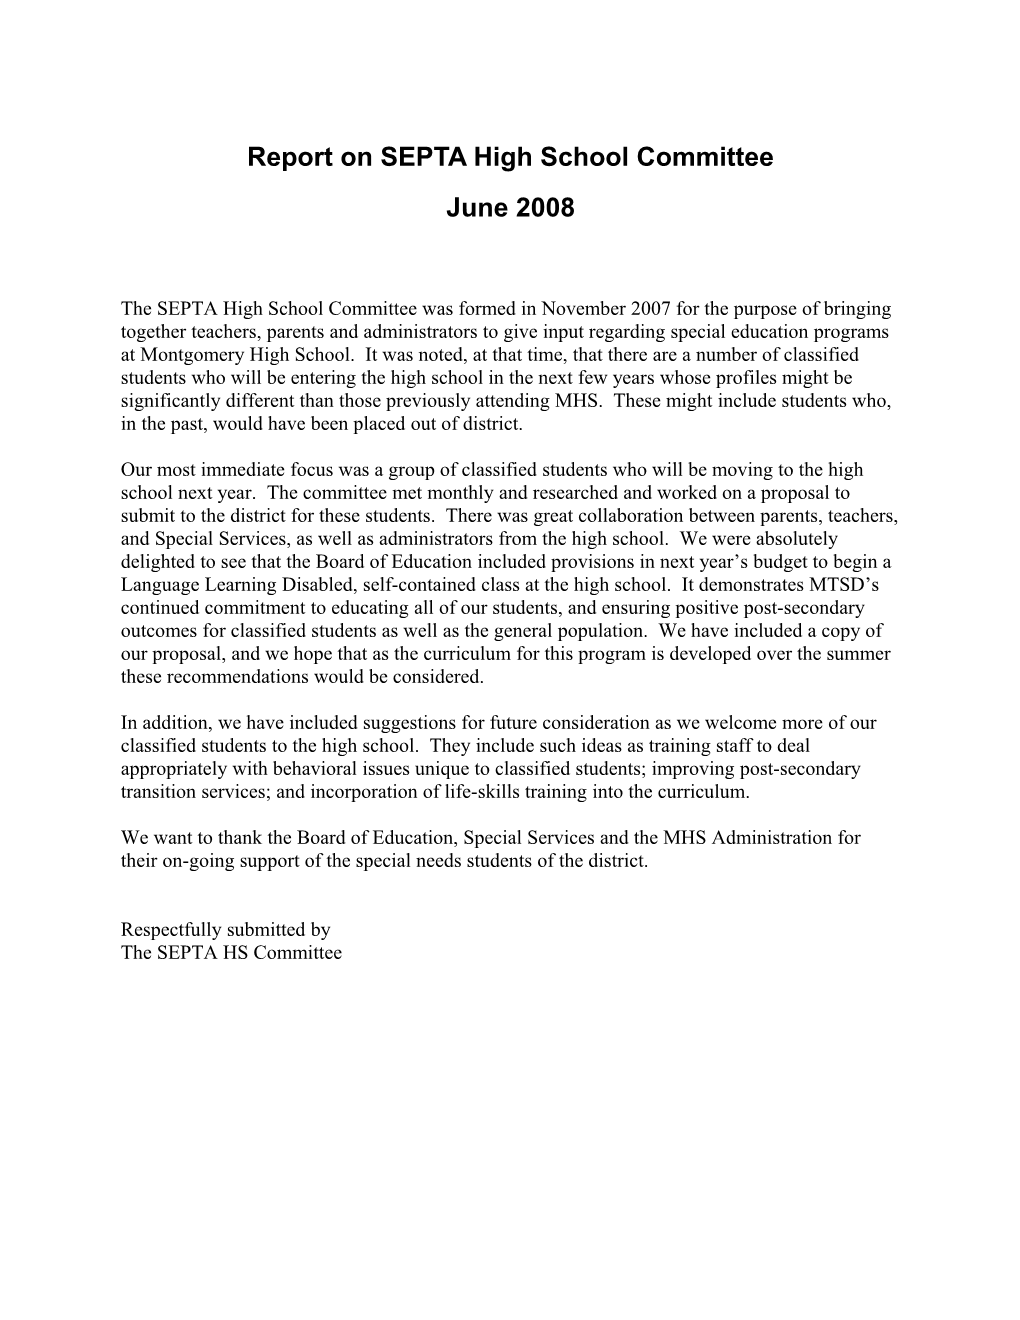 Report on SEPTA High School Committee June 2008